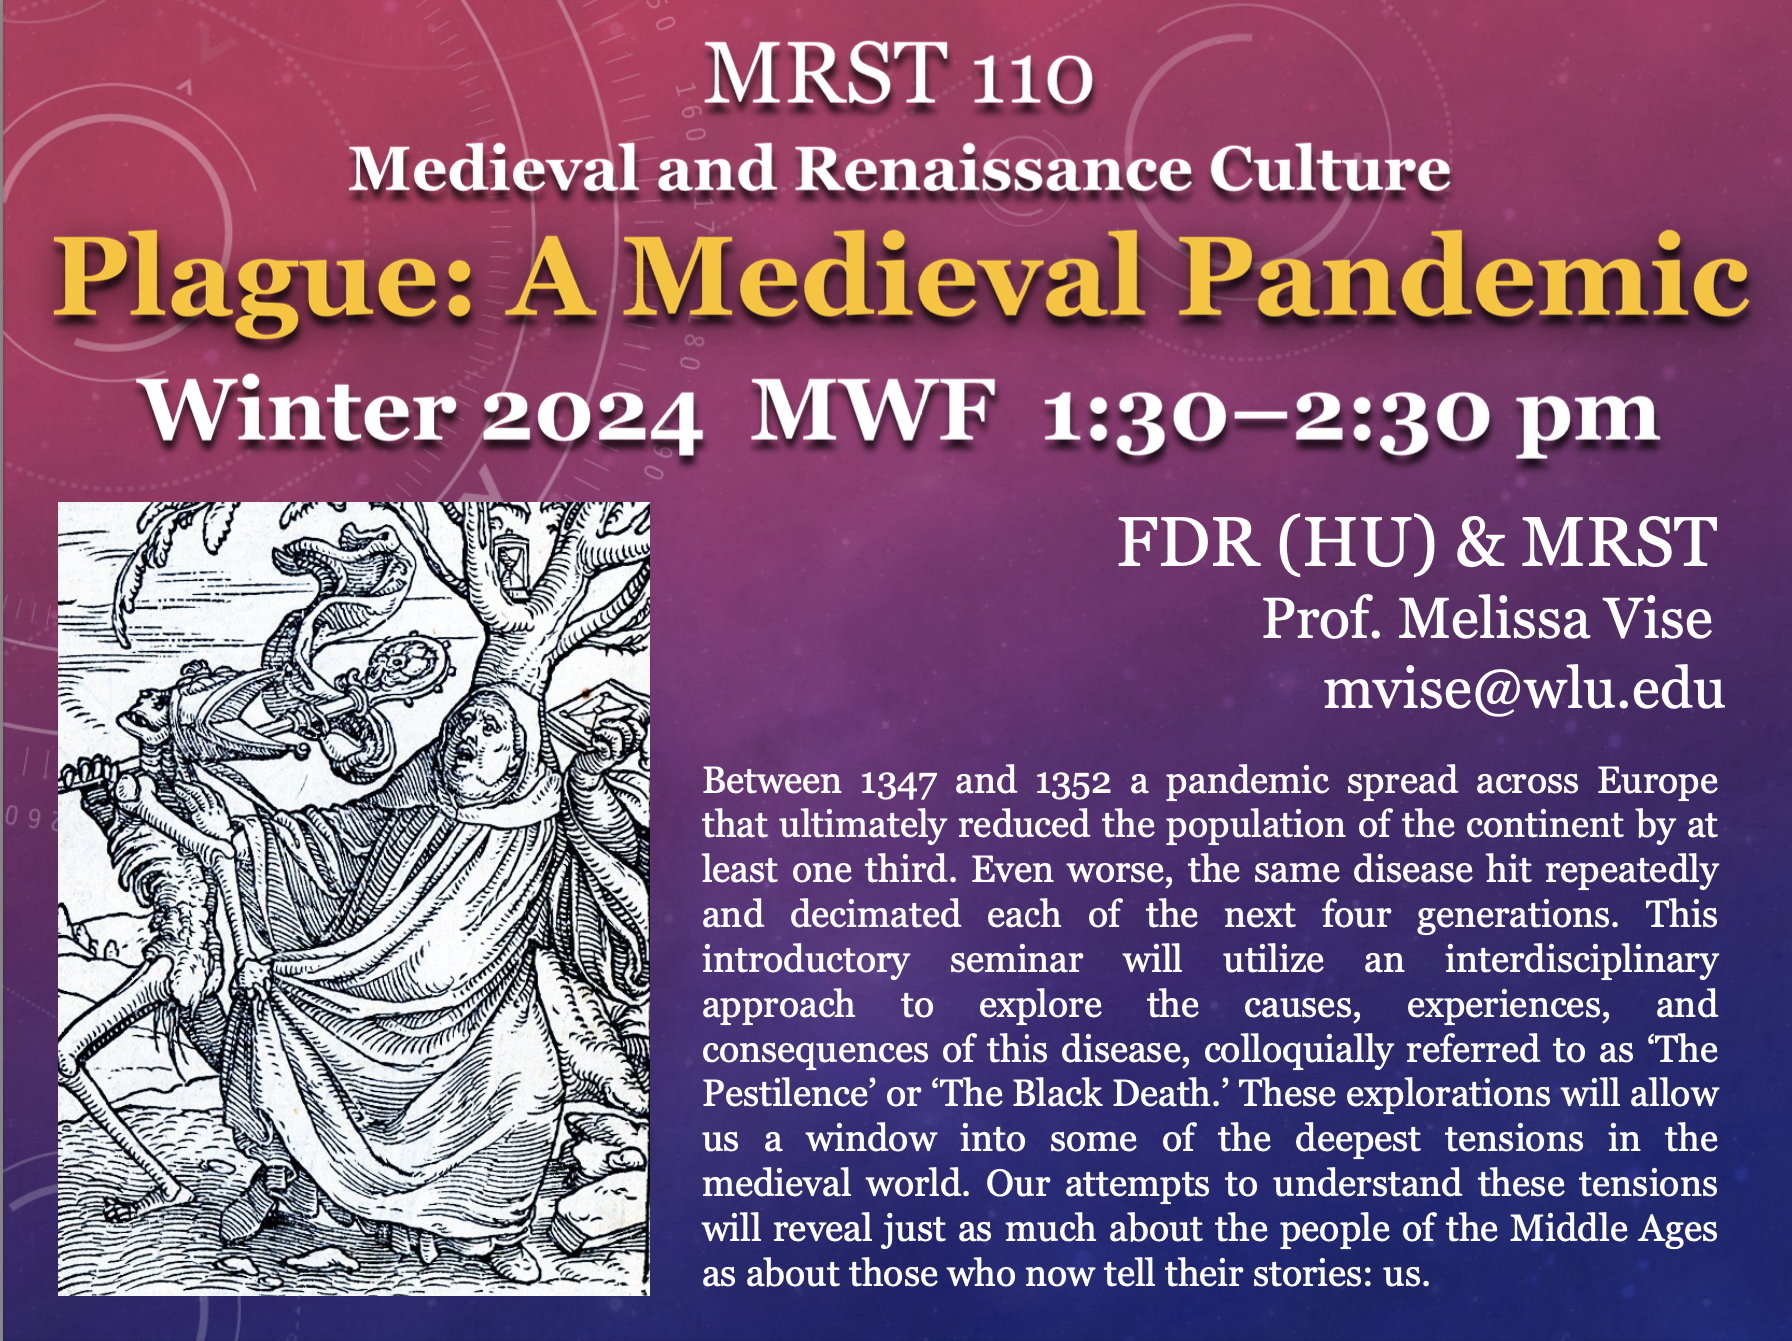 Course description for MRST 110 Medieval and Renaissance Culture